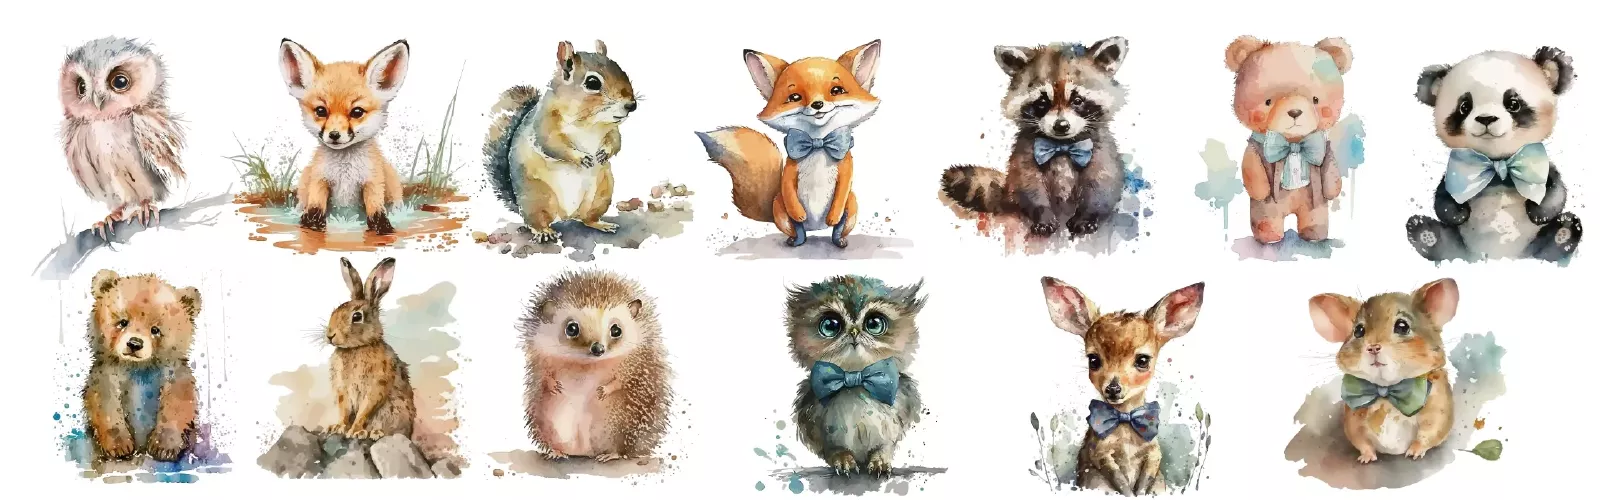 دانلود وکتور مجموعه طراحی کارتونی حیوانات کوچک